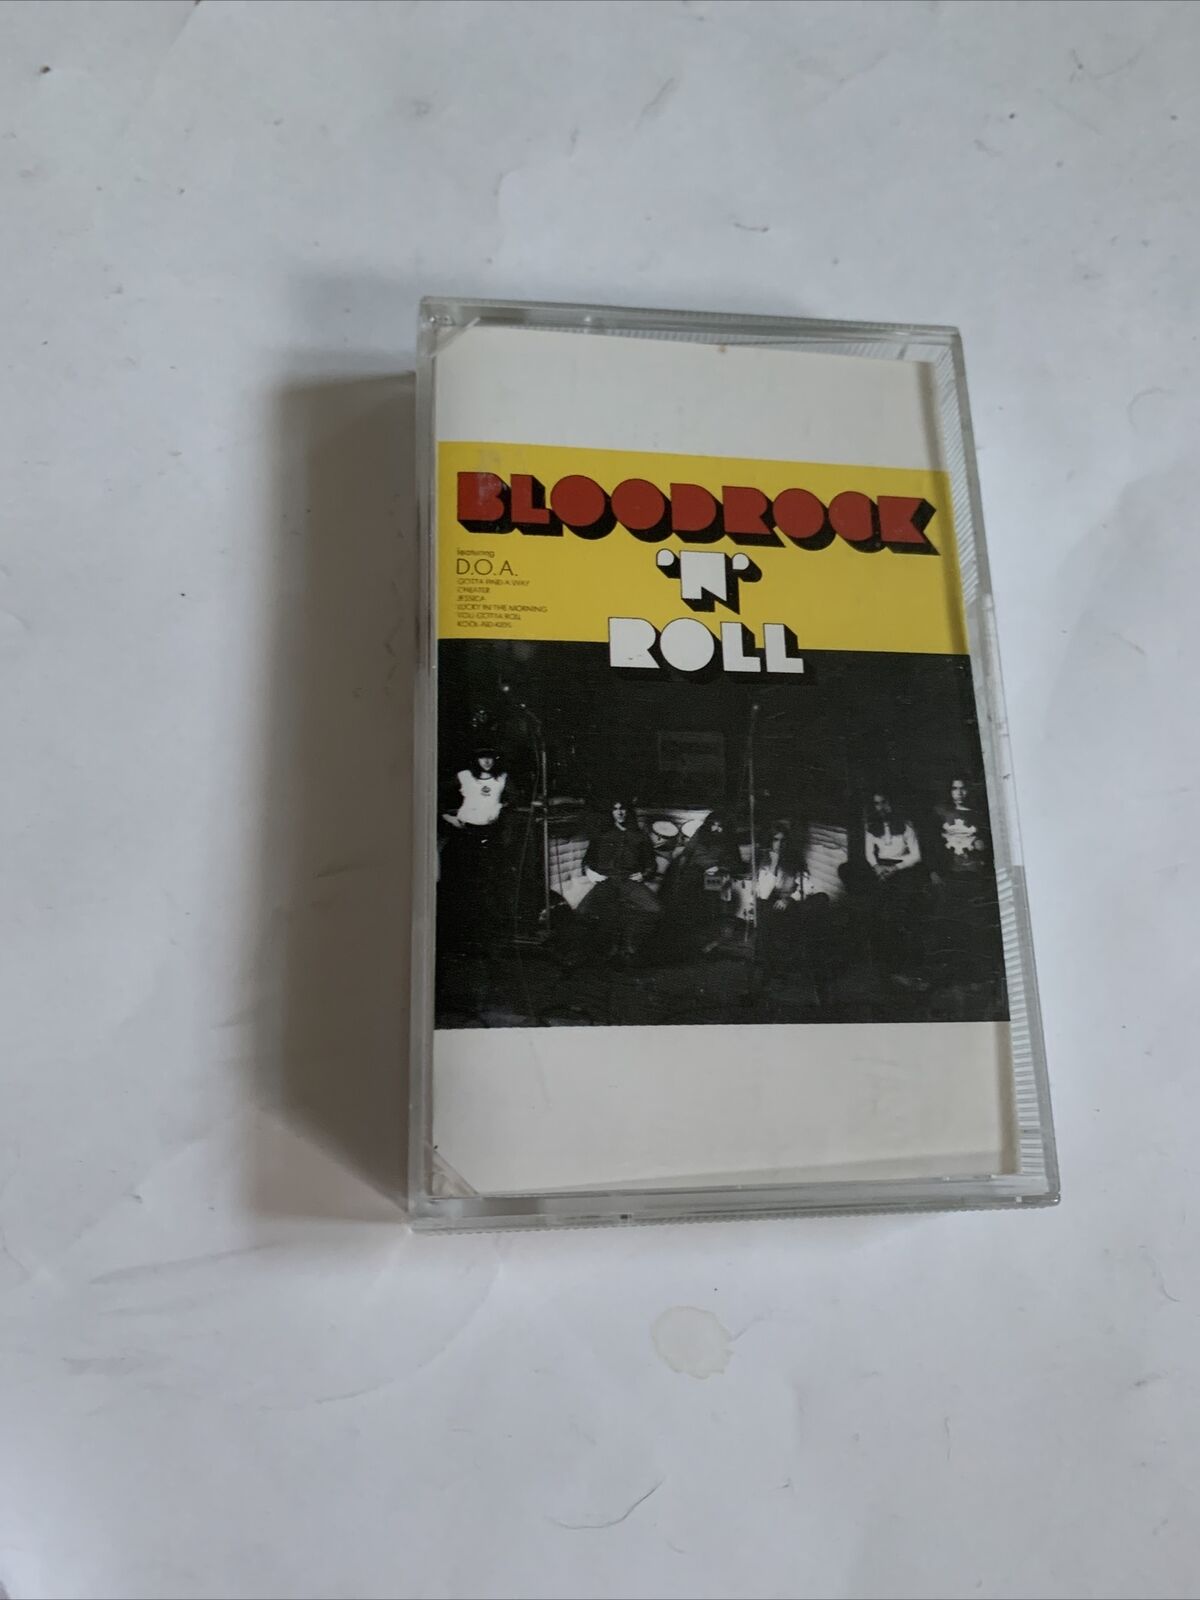 Bloodrock N Roll Bloodrock Cassette Vintage 1989 Rare Item